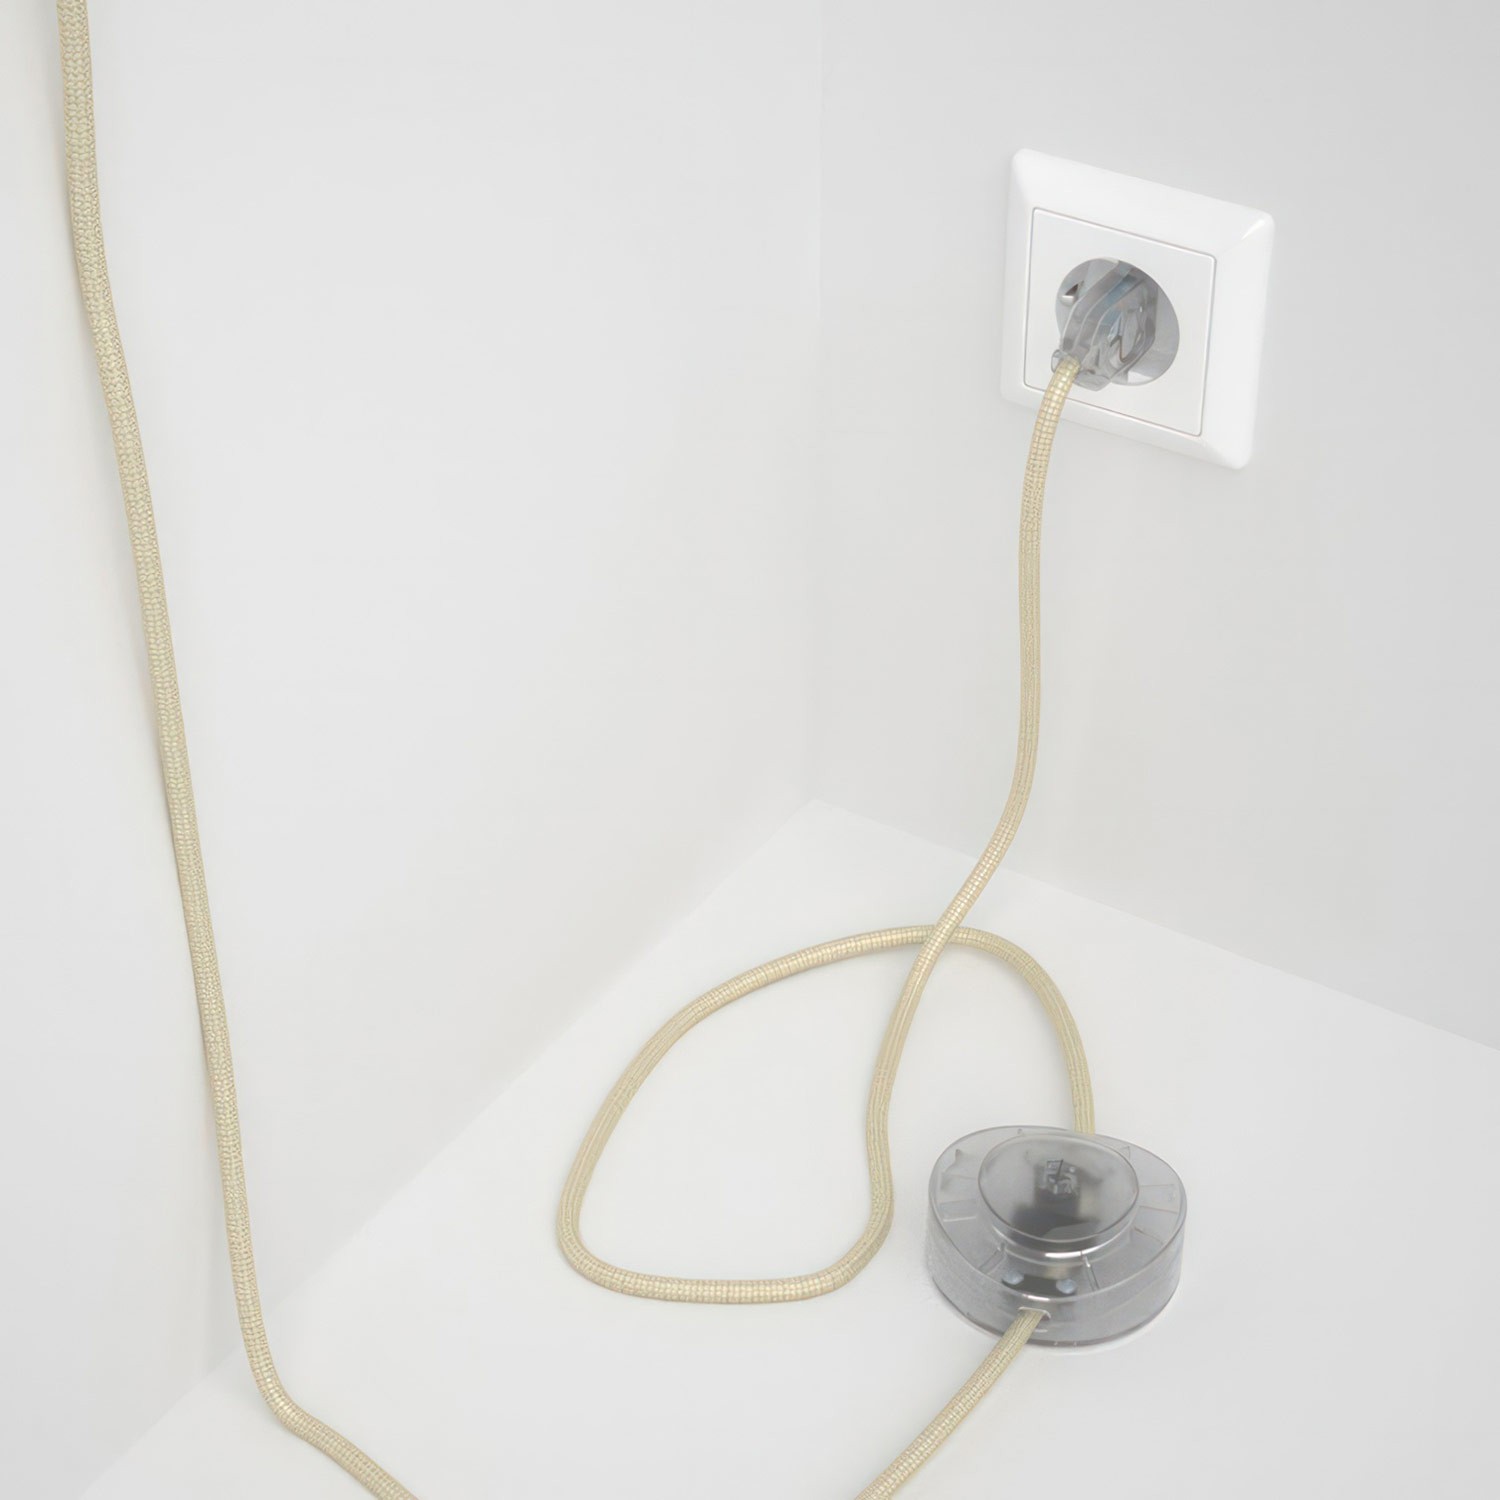 Cableado para lámpara de pie, cable RM00 Efecto Seda Marfil 3 m. Elige tu el color de la clavija y del interruptor!